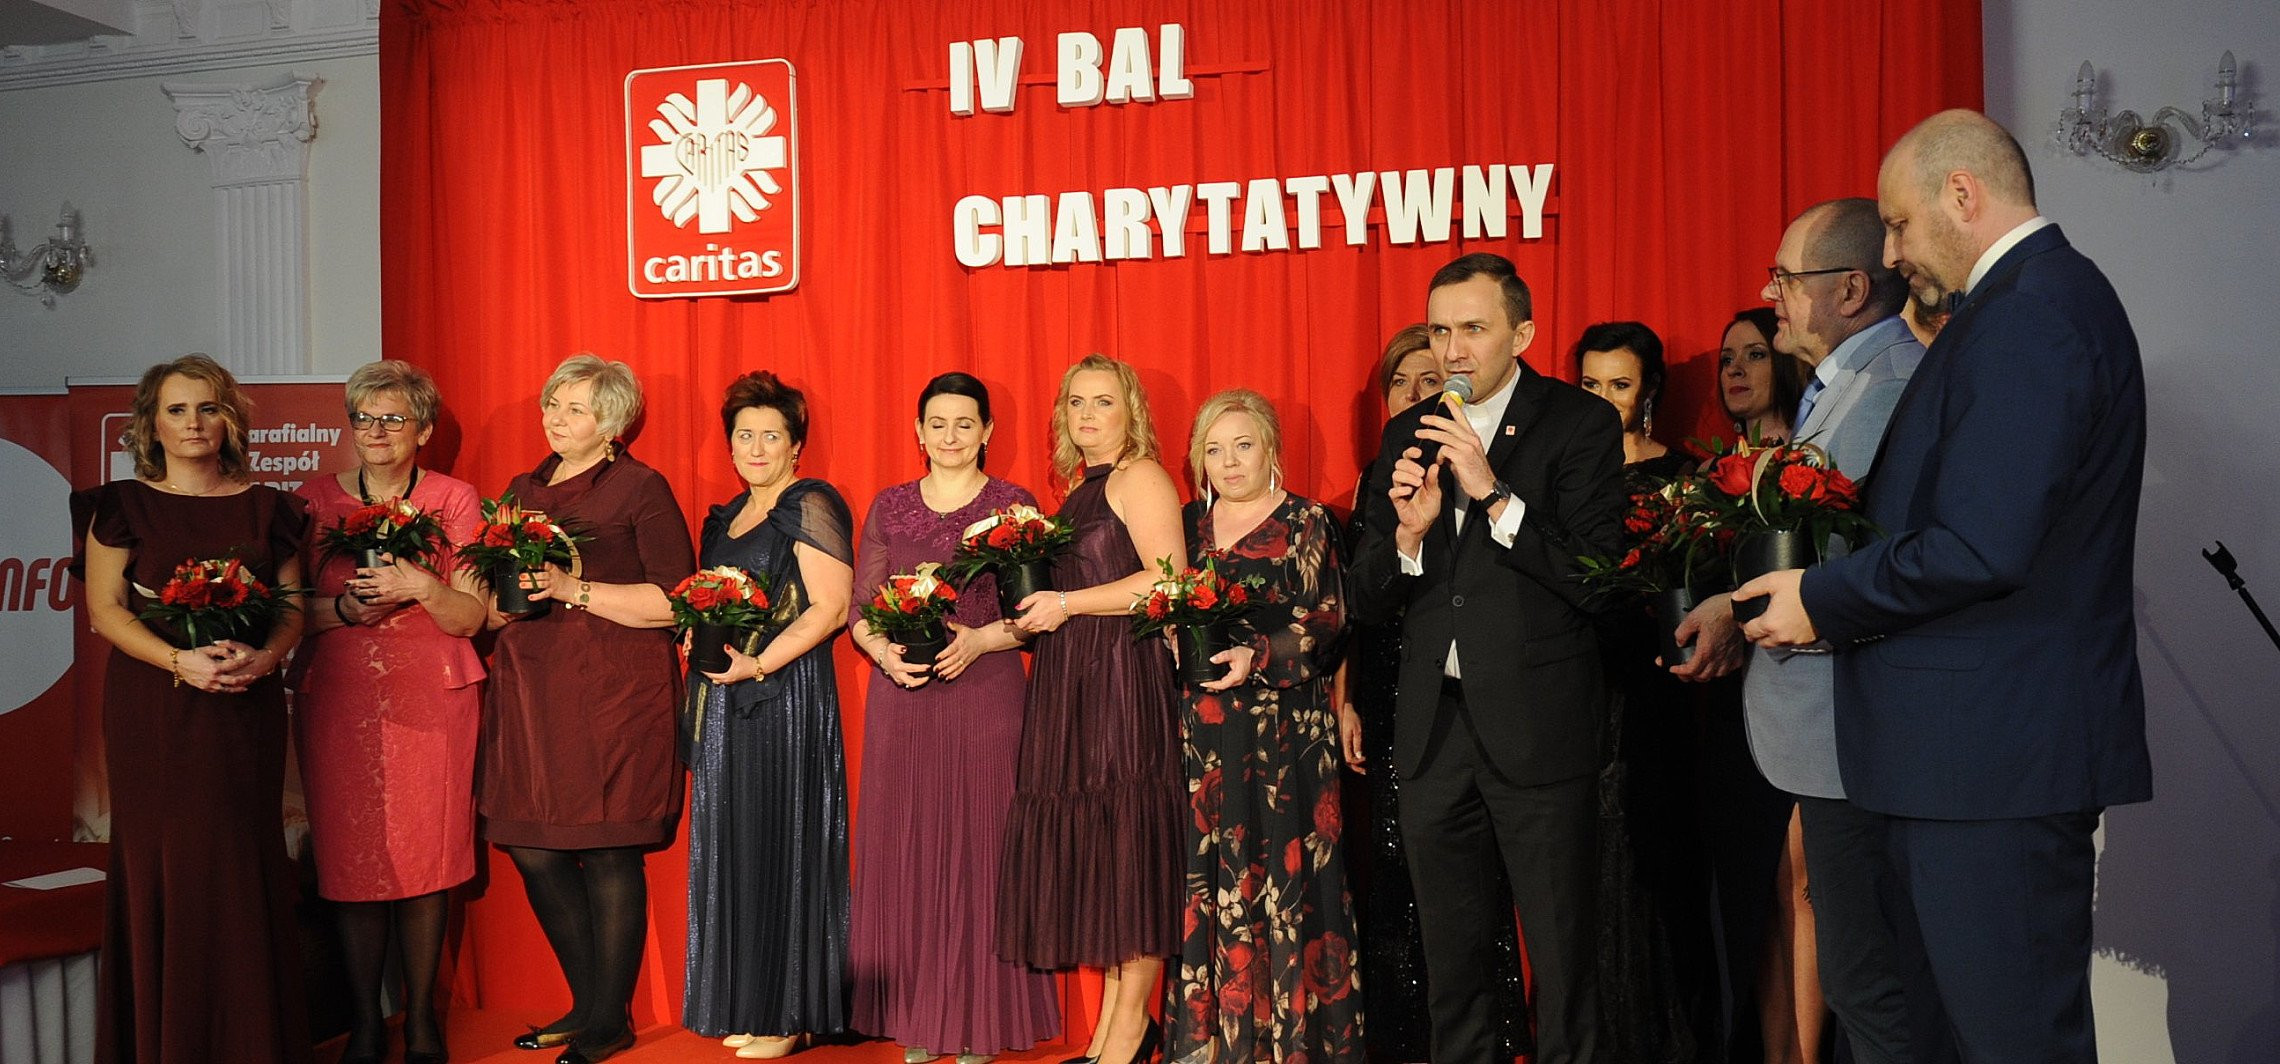 Inowrocław - Po raz 4. spotkali się na balu charytatywnym